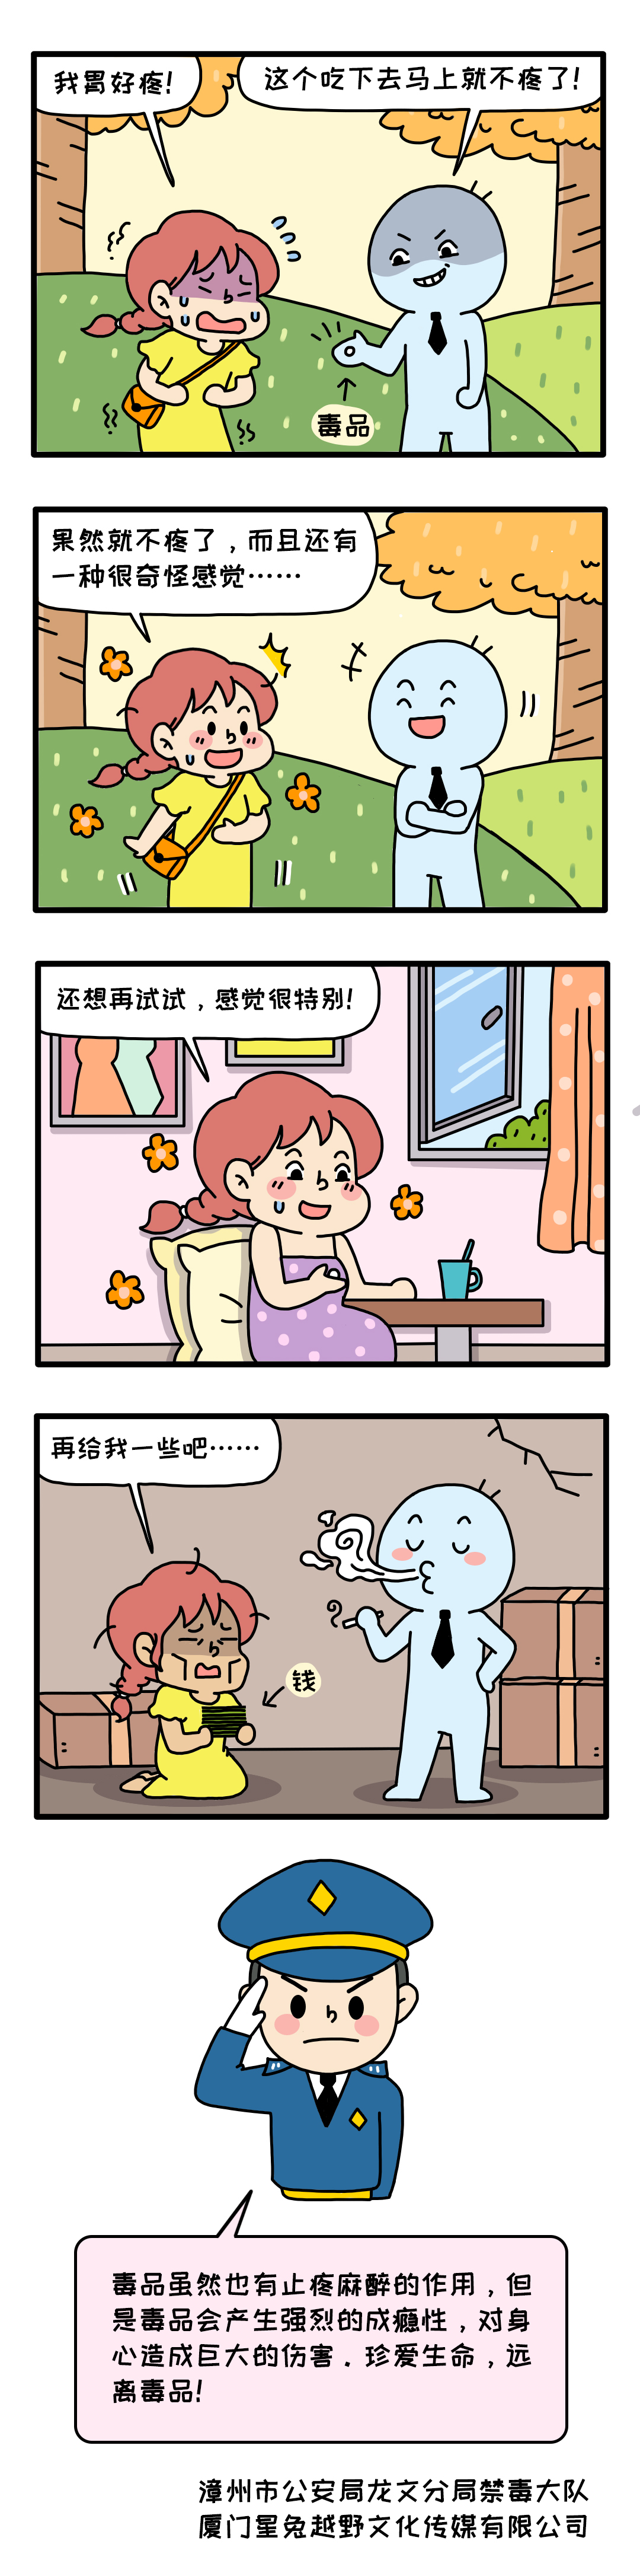 禁毒小漫画6